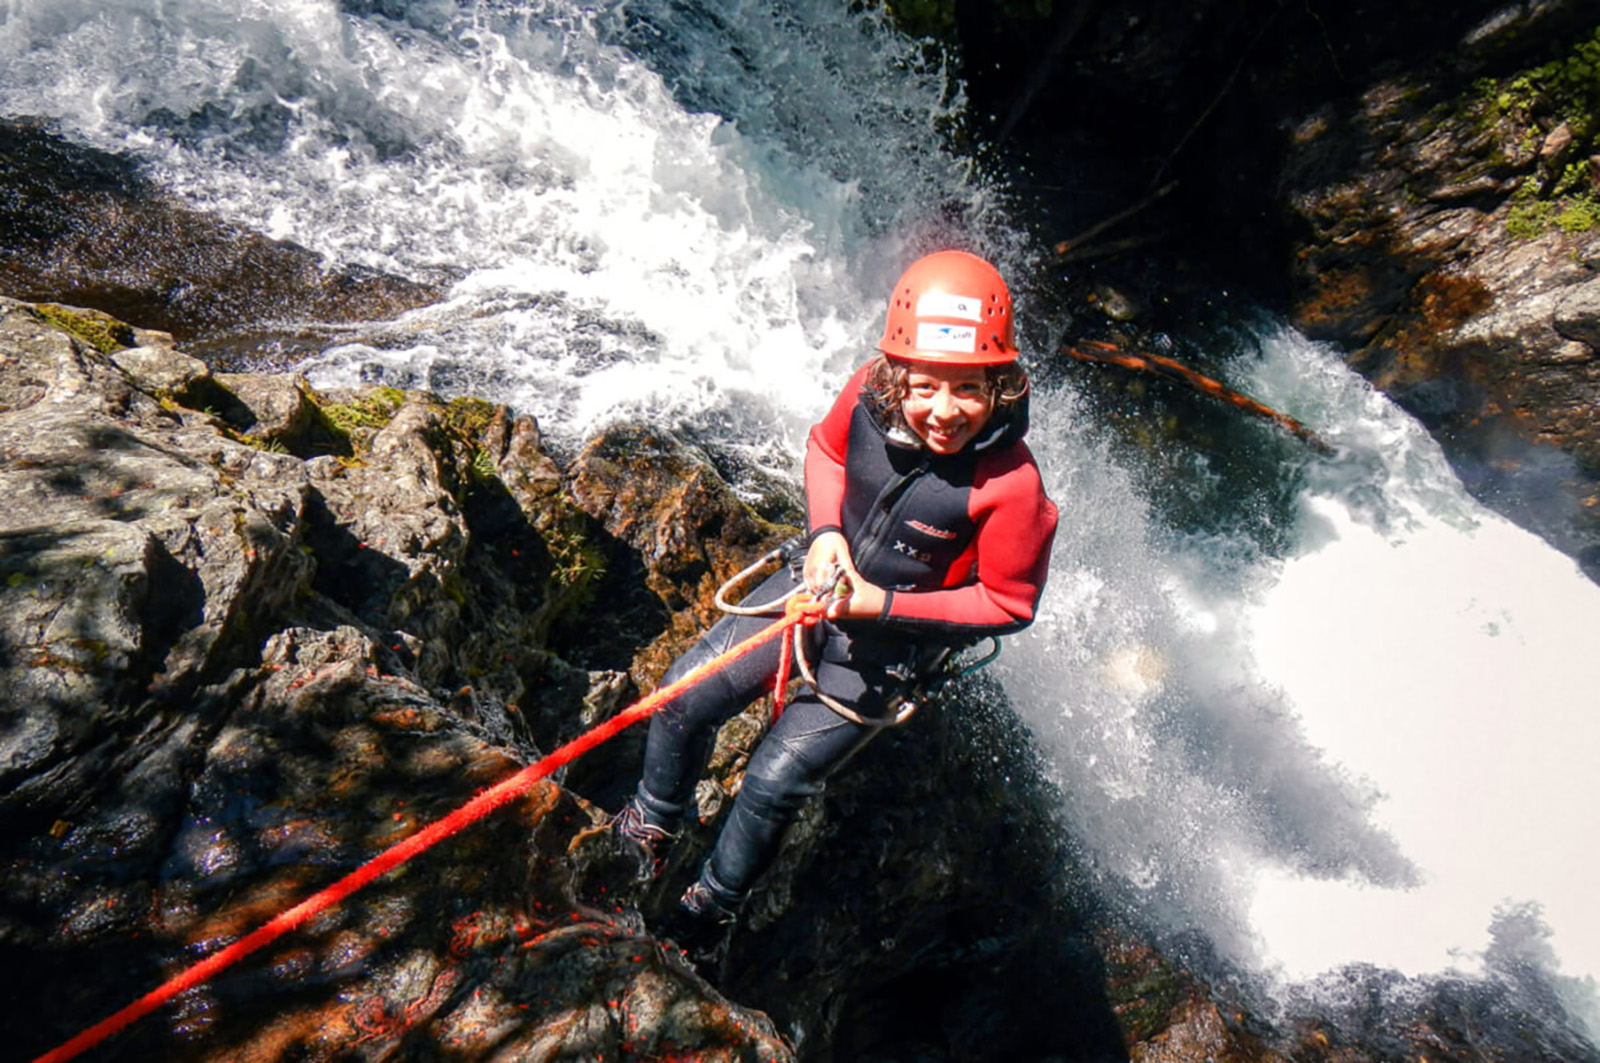 Schluchteln heißt Spaß am Klettern – im Wildwasser und mit jeder Menge Abenteuer.